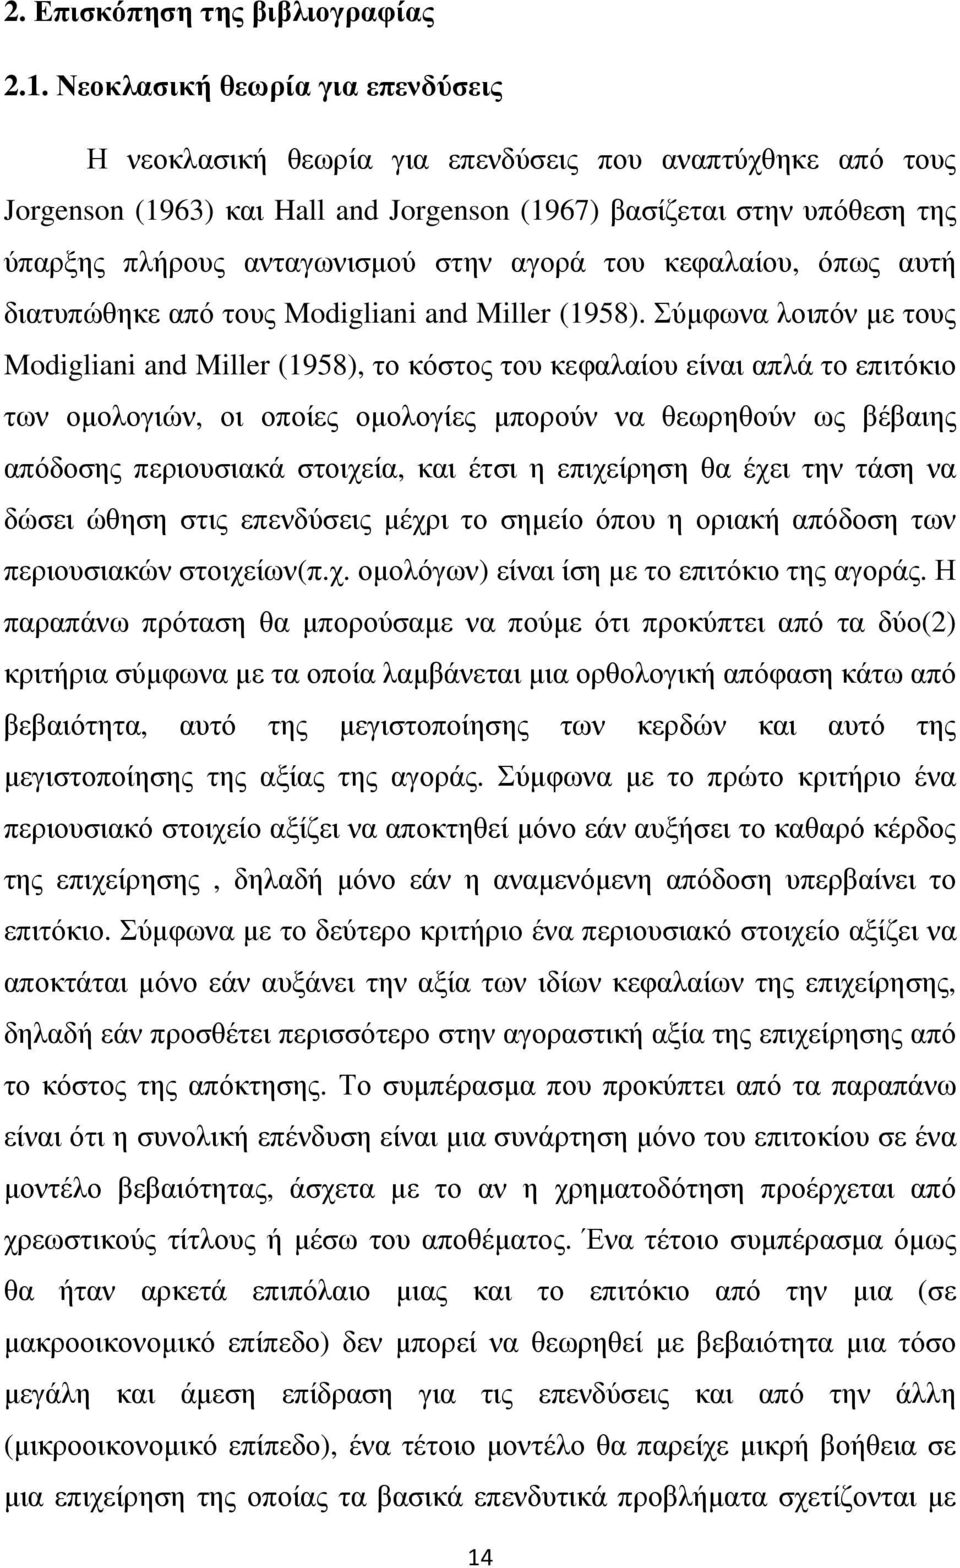 στην αγορά του κεφαλαίου, όπως αυτή διατυπώθηκε από τους Modigliani and Miller (1958).